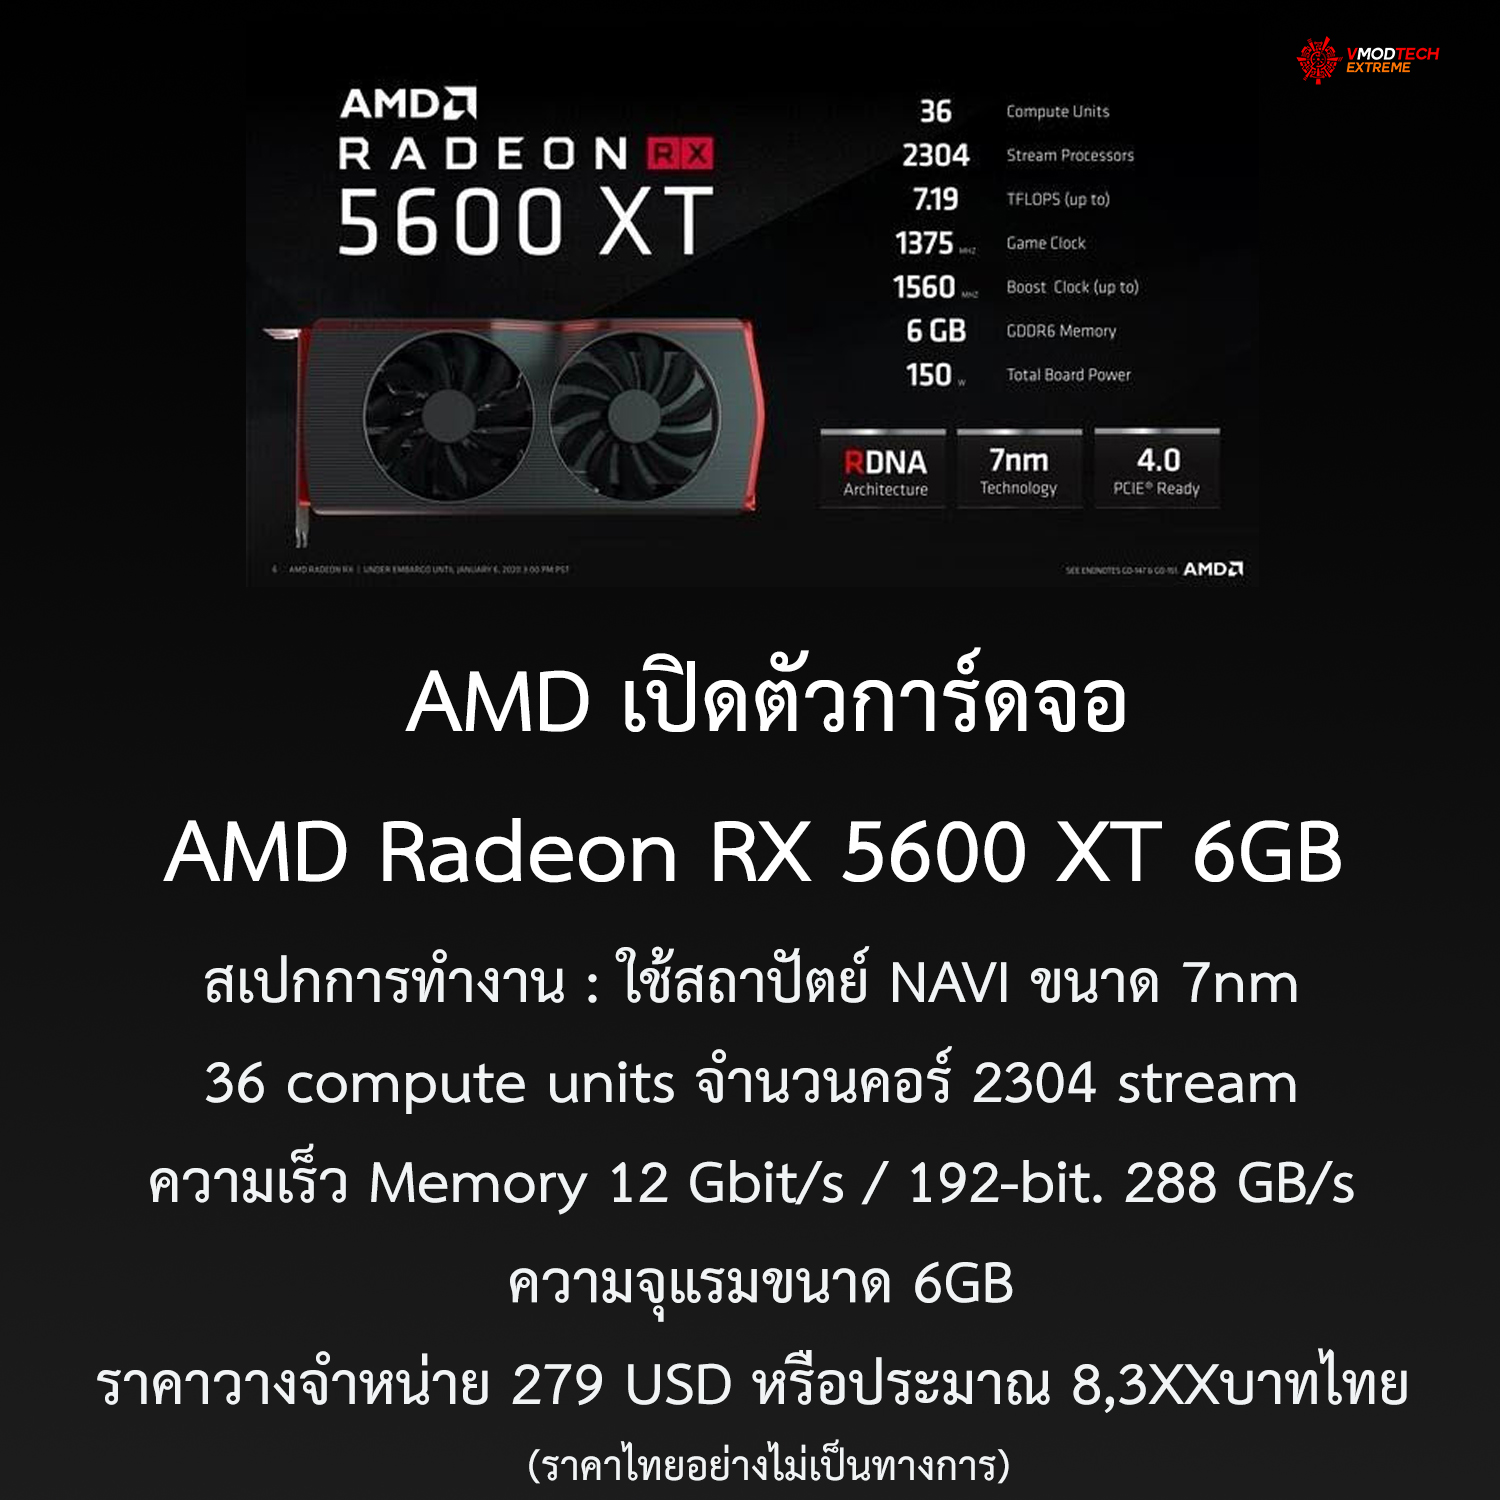 amd 5600xt2 AMD เปิดตัวการ์ดจอ AMD Radeon RX 5600 XT 6GB ในราคา 279 USD หรือประมาณ 8,3XXบาทไทย